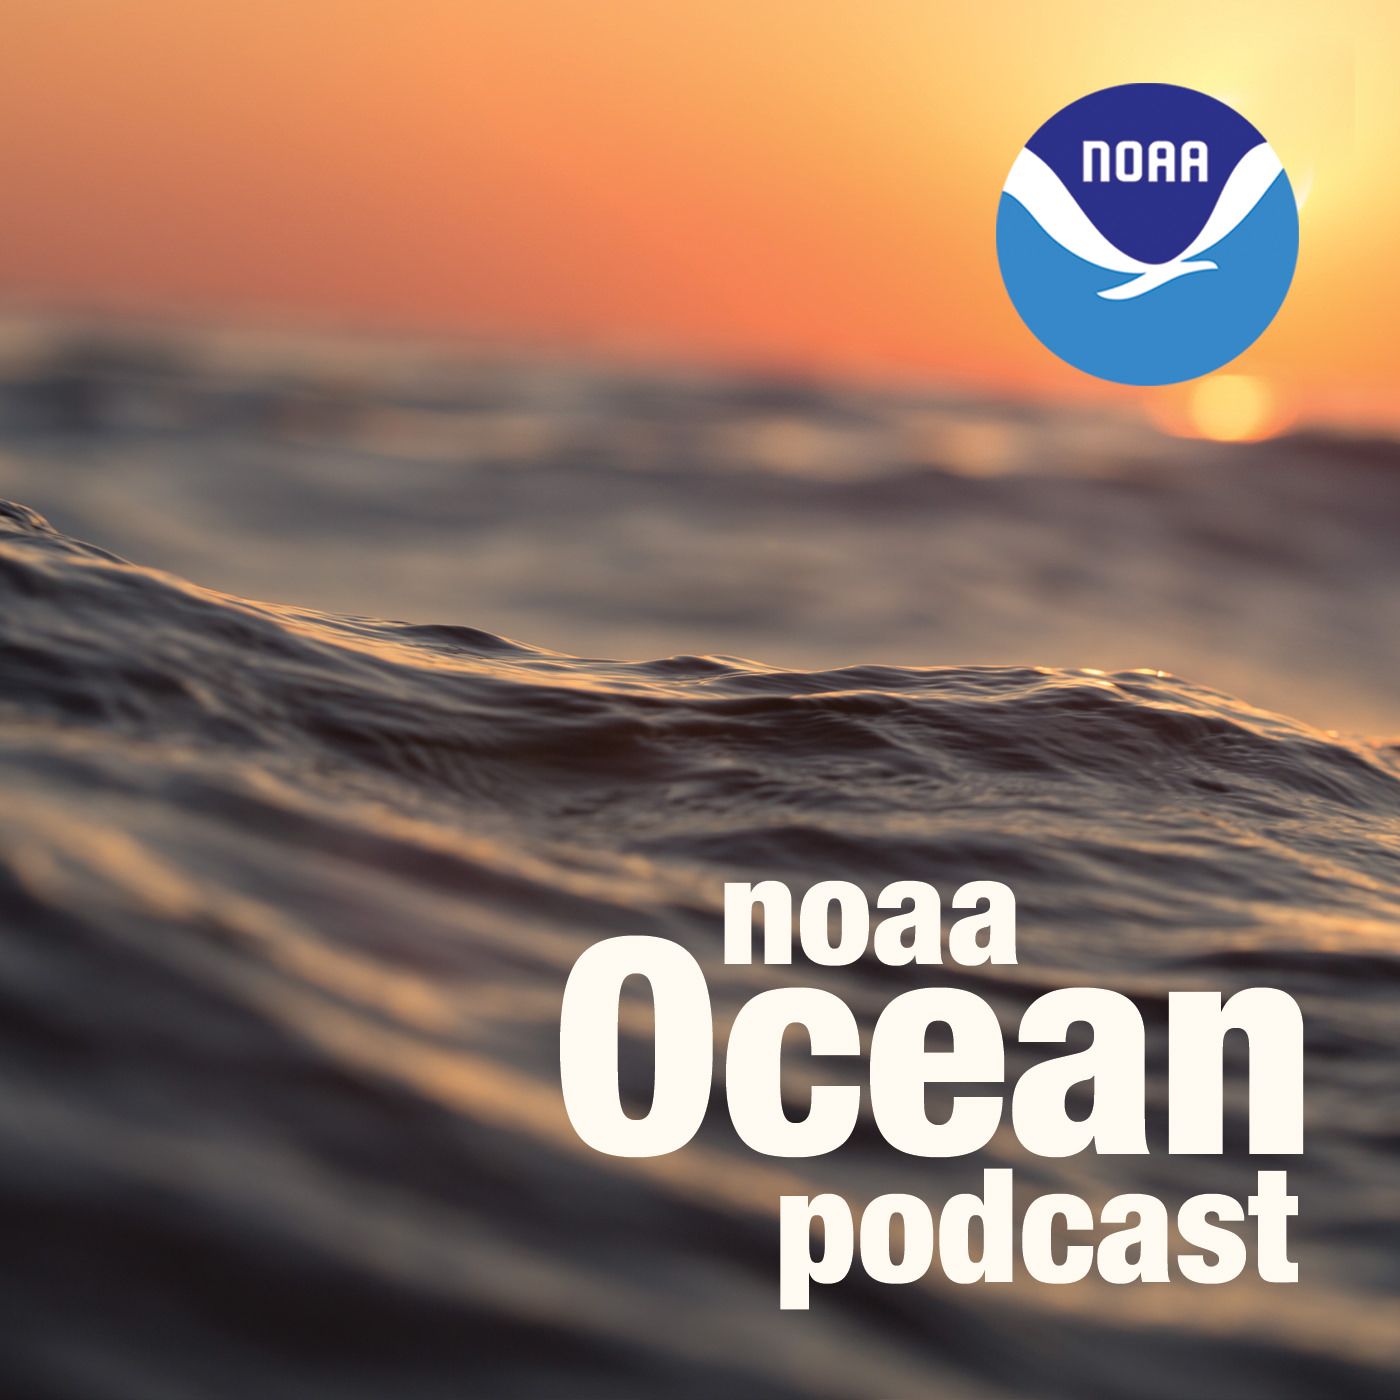 NOAA Ocean podcast icon